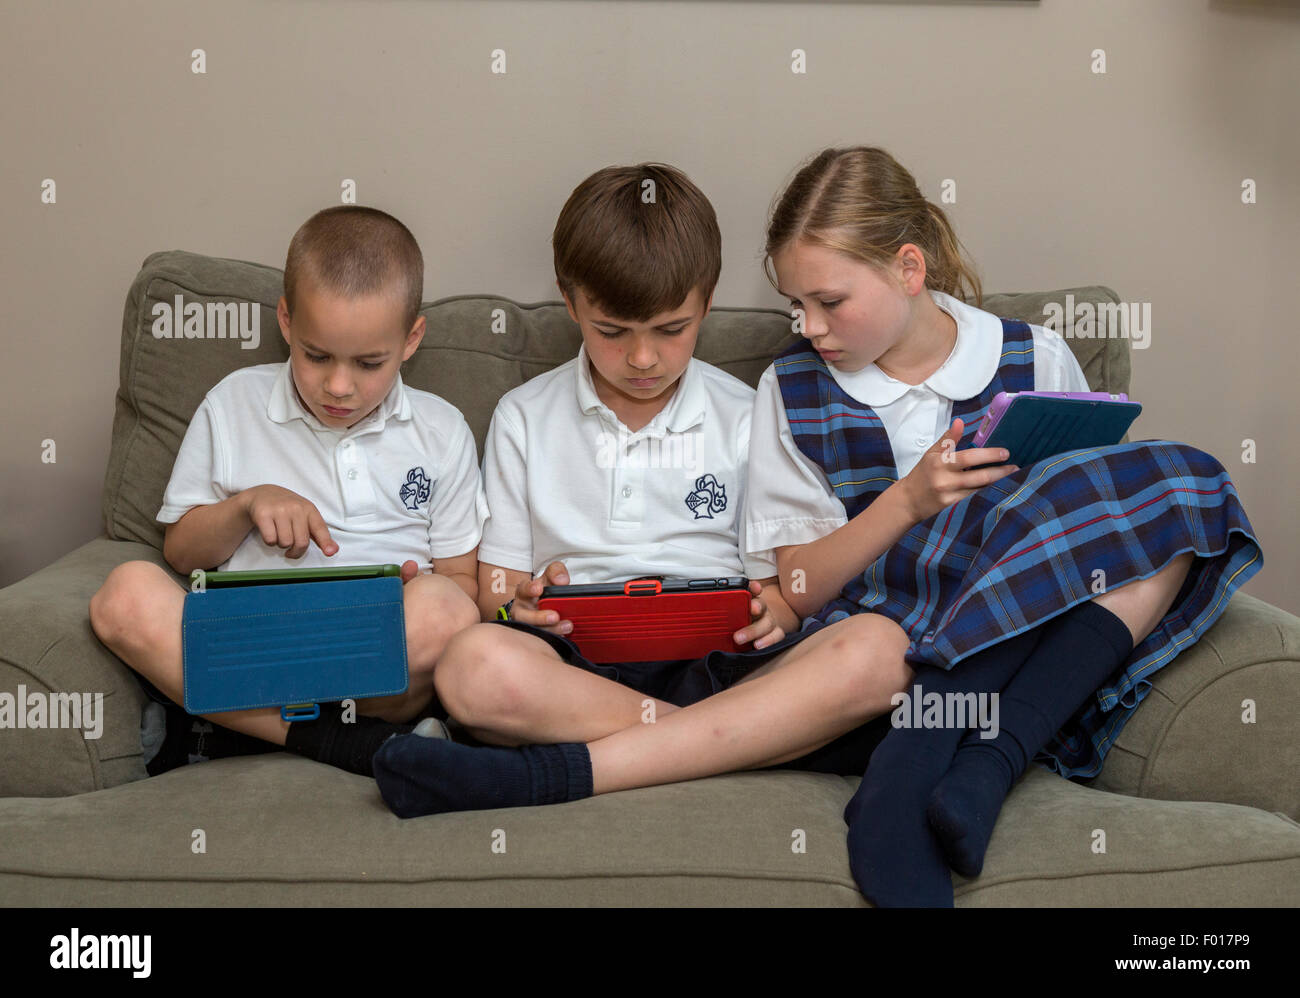 Famiglia moderna a casa dopo la scuola: i bambini con i loro ipad. Il sig. Nota sequenza con  PER5313, 5314 e 5315. Foto Stock